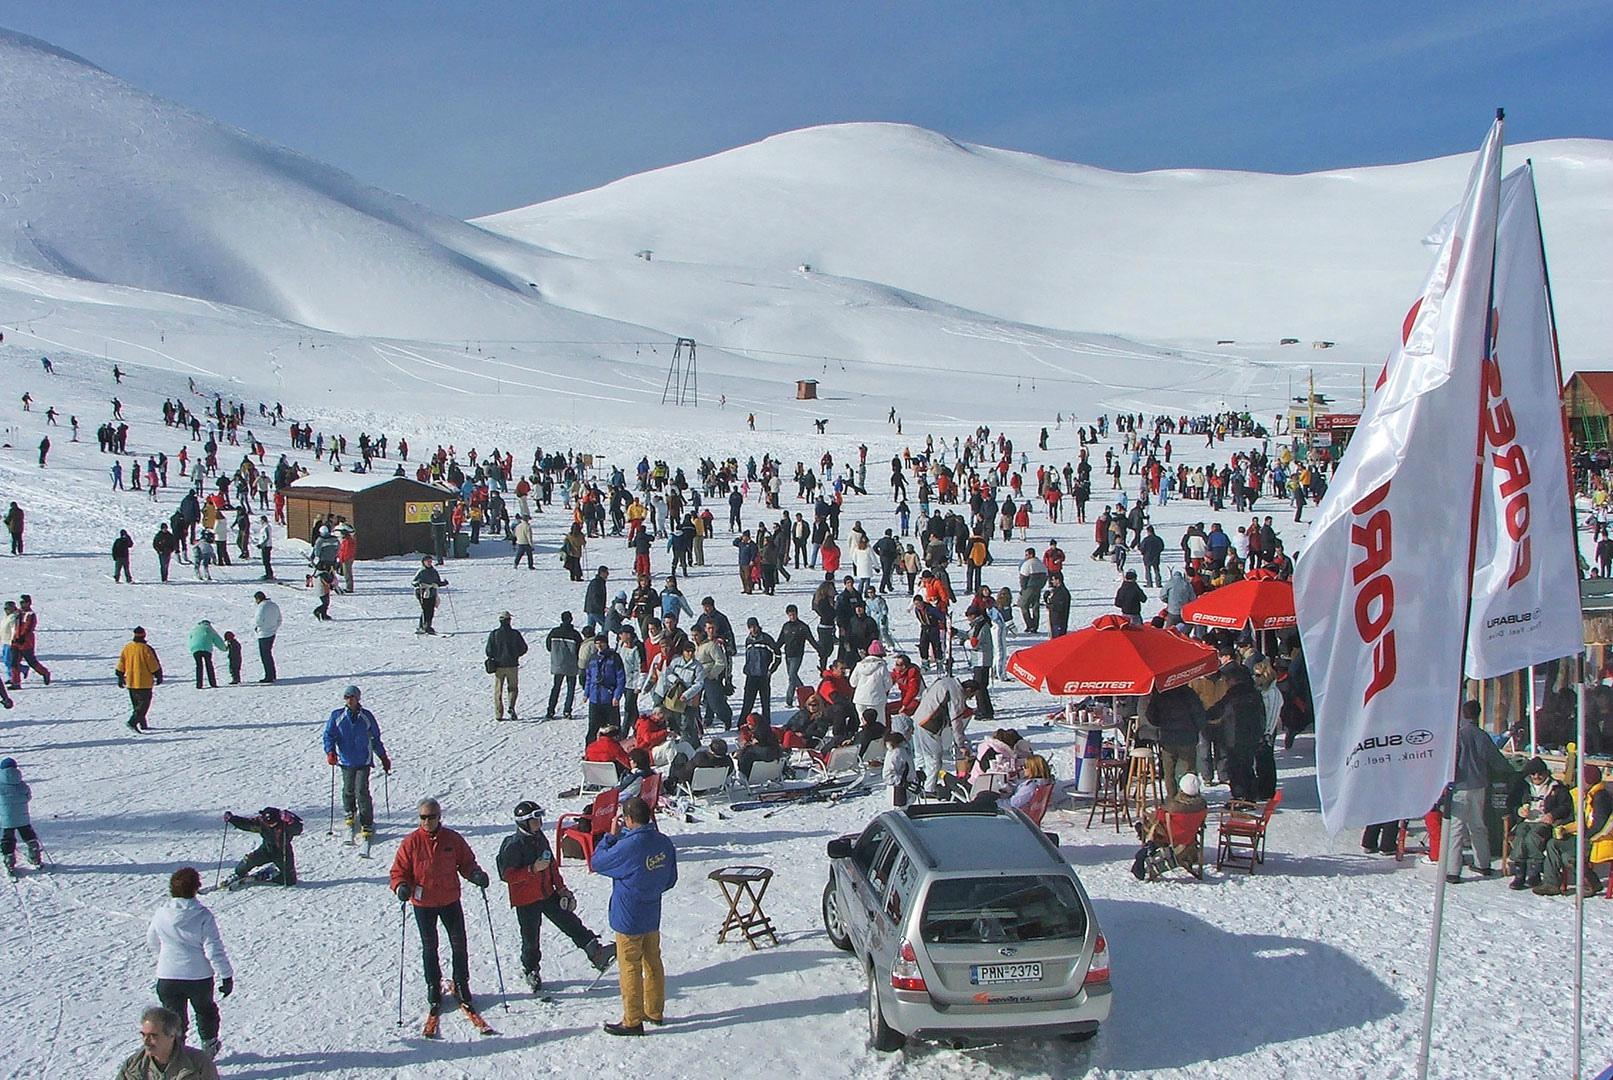 Ανοίγει το Χιονοδρομικό Φαλακρού 12-13 και 19-20 Μαρτίου με Δίαθλο και snow leopard day